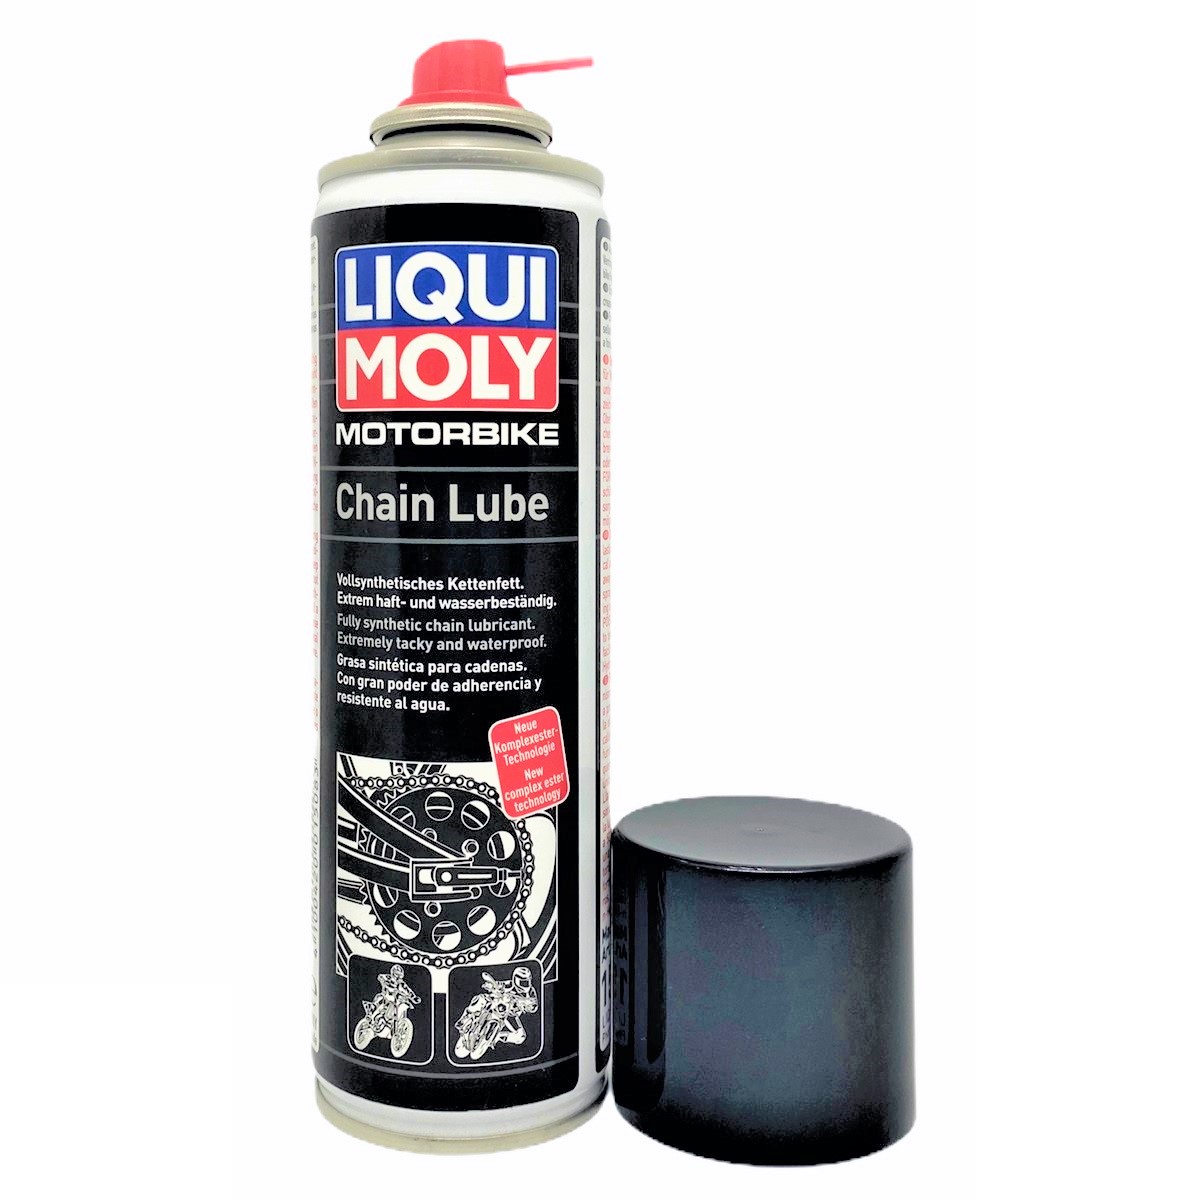 Chai xịt bảo dưỡng sên xích chuyên dụng Liqui Moly 1508 - Tặng kèm 1 khăn lau chuyên dụng 3M